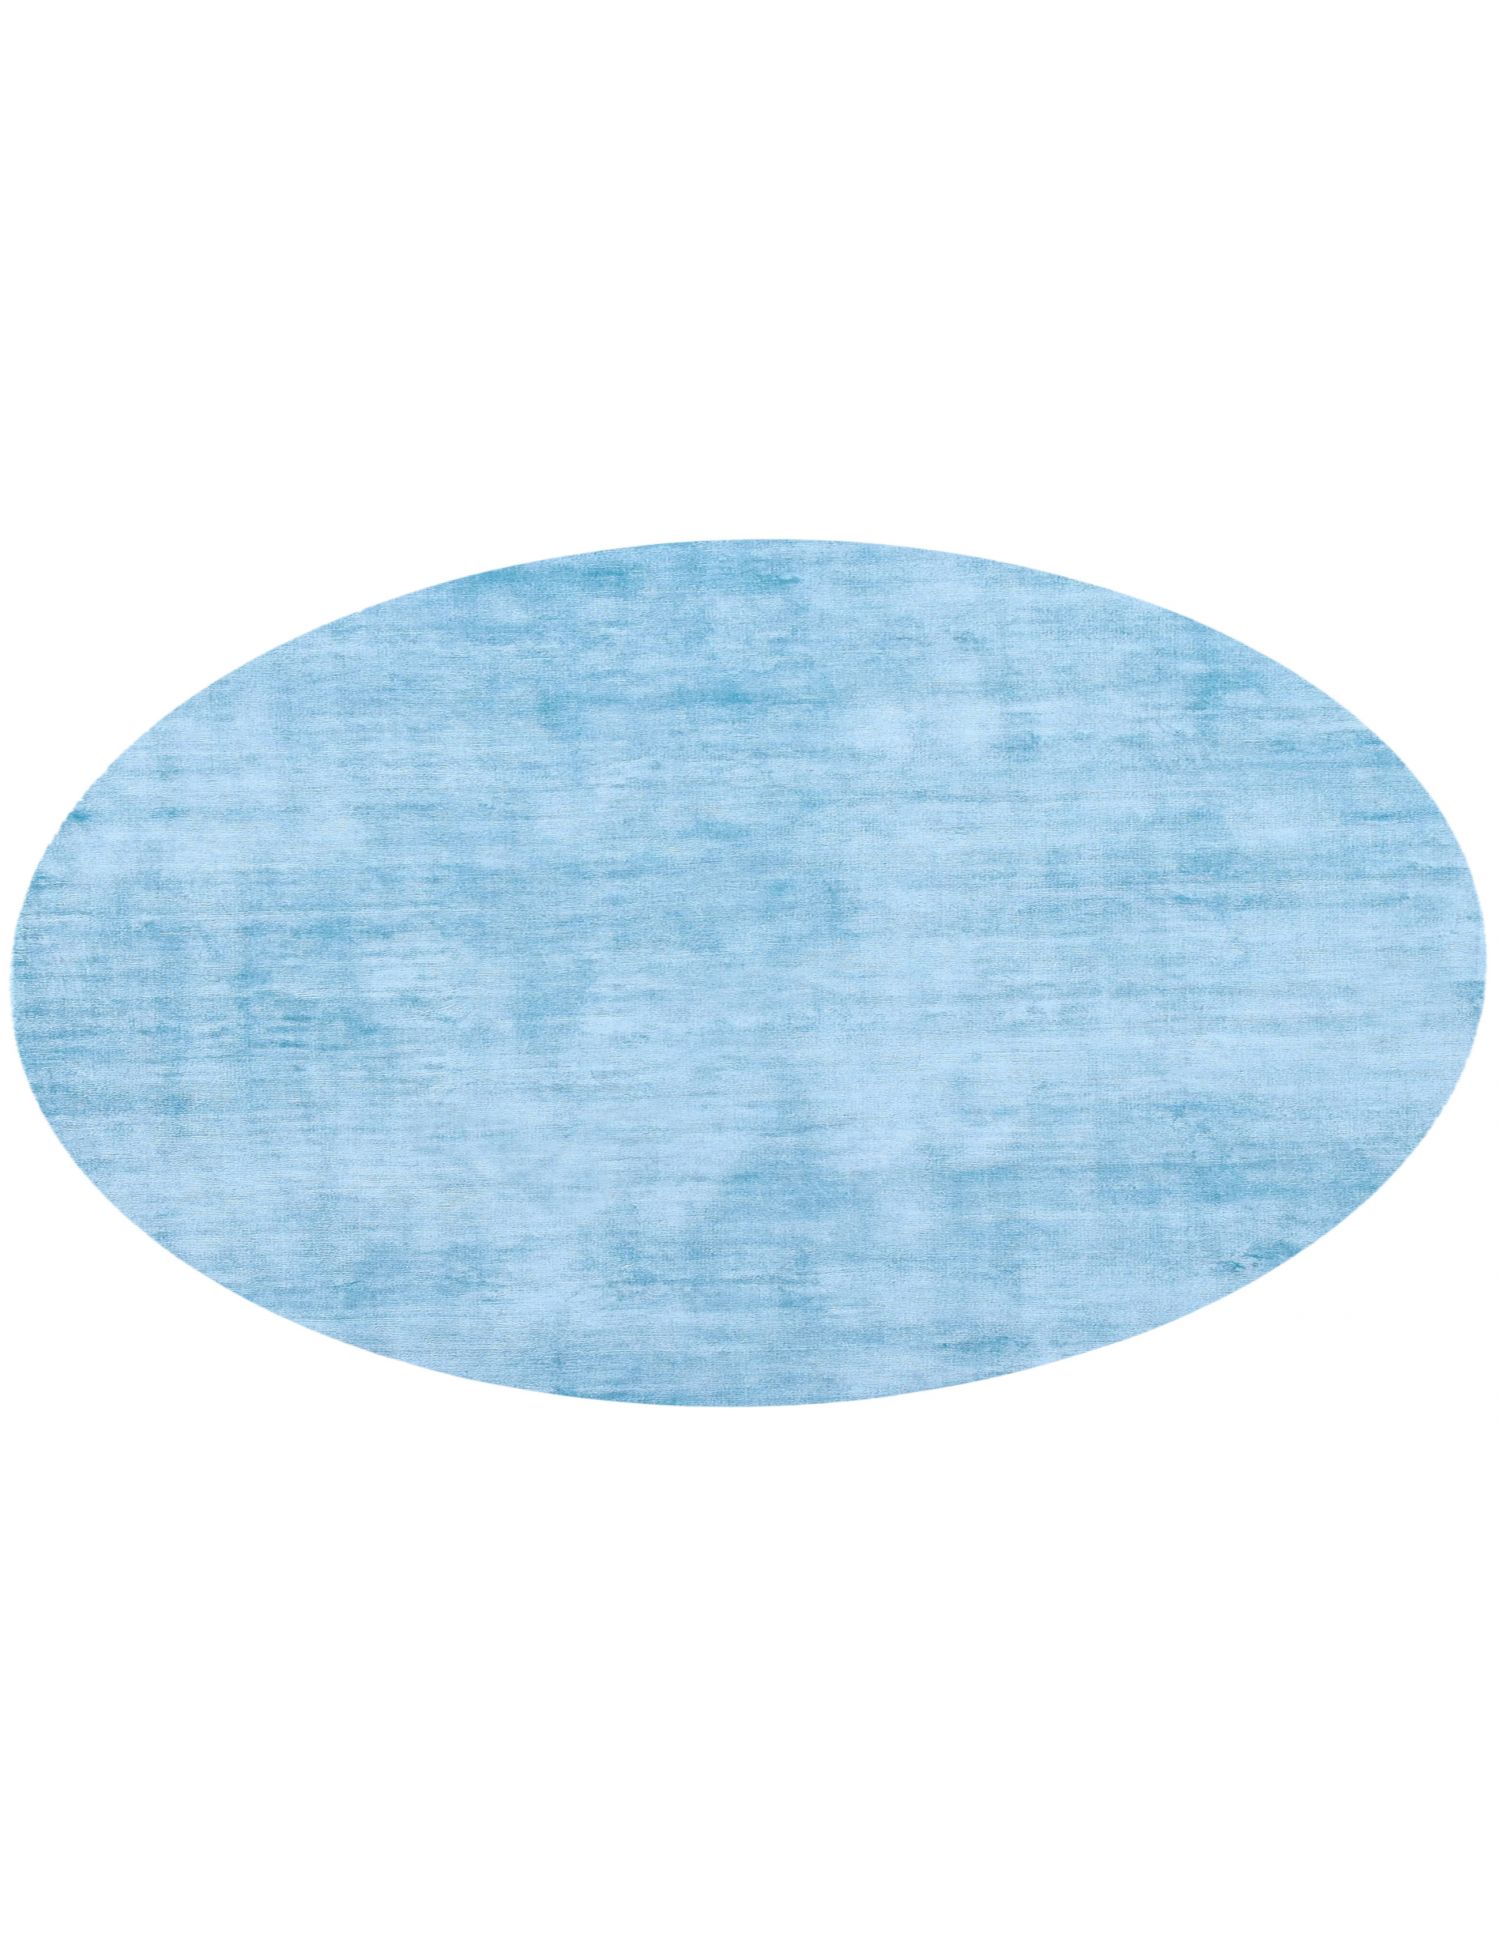 Rund Cozy  blau <br/>180 x 180 cm